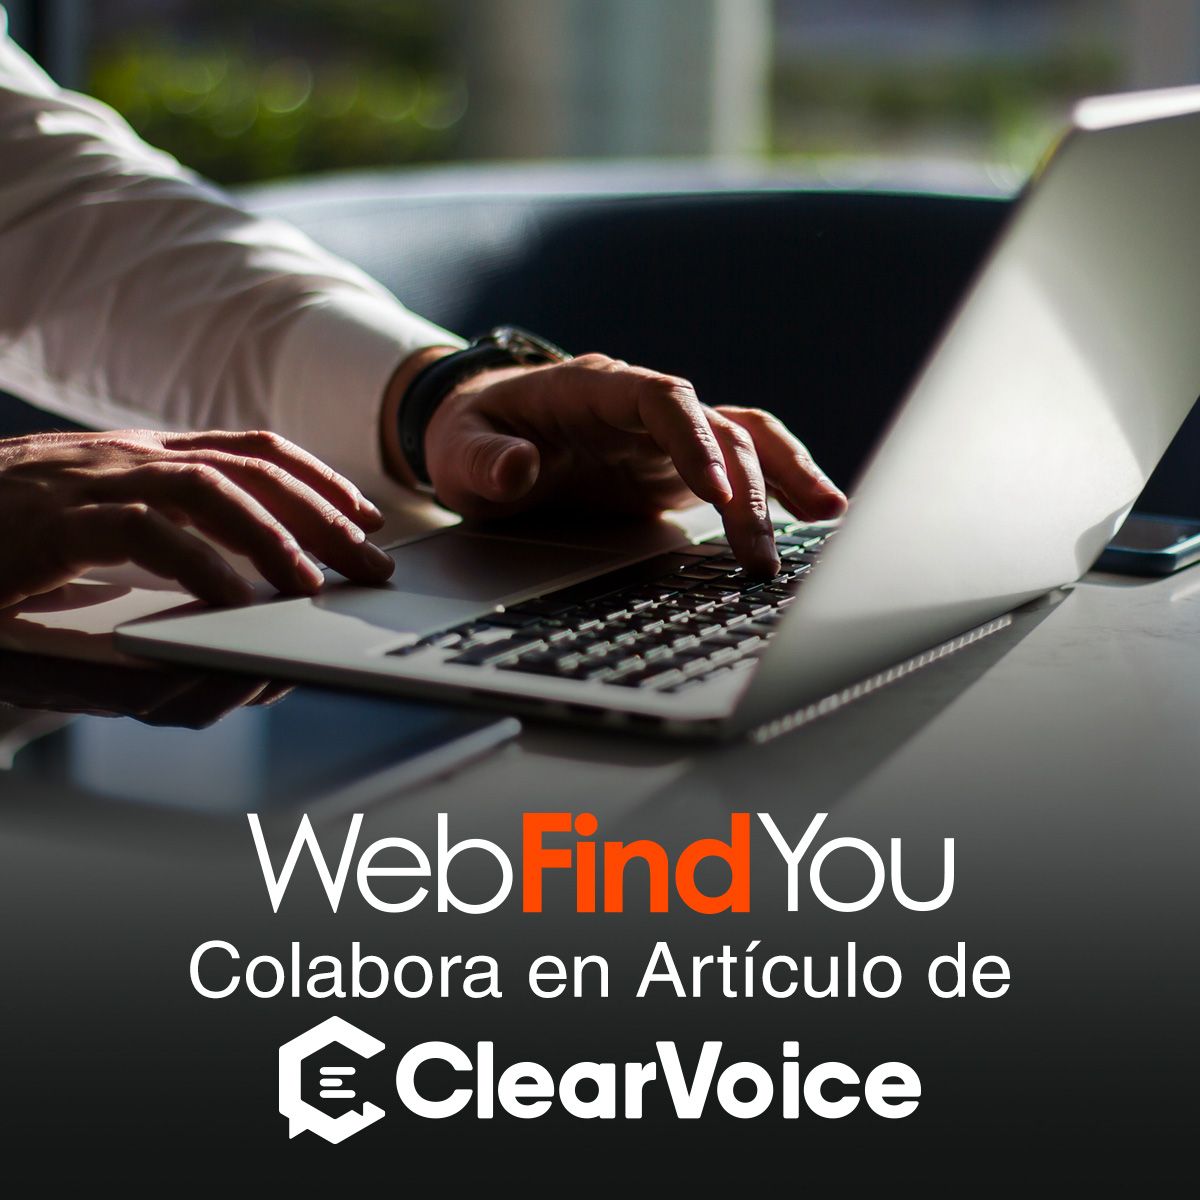 WebFindYou Colabora en Artículo de ClearVoice